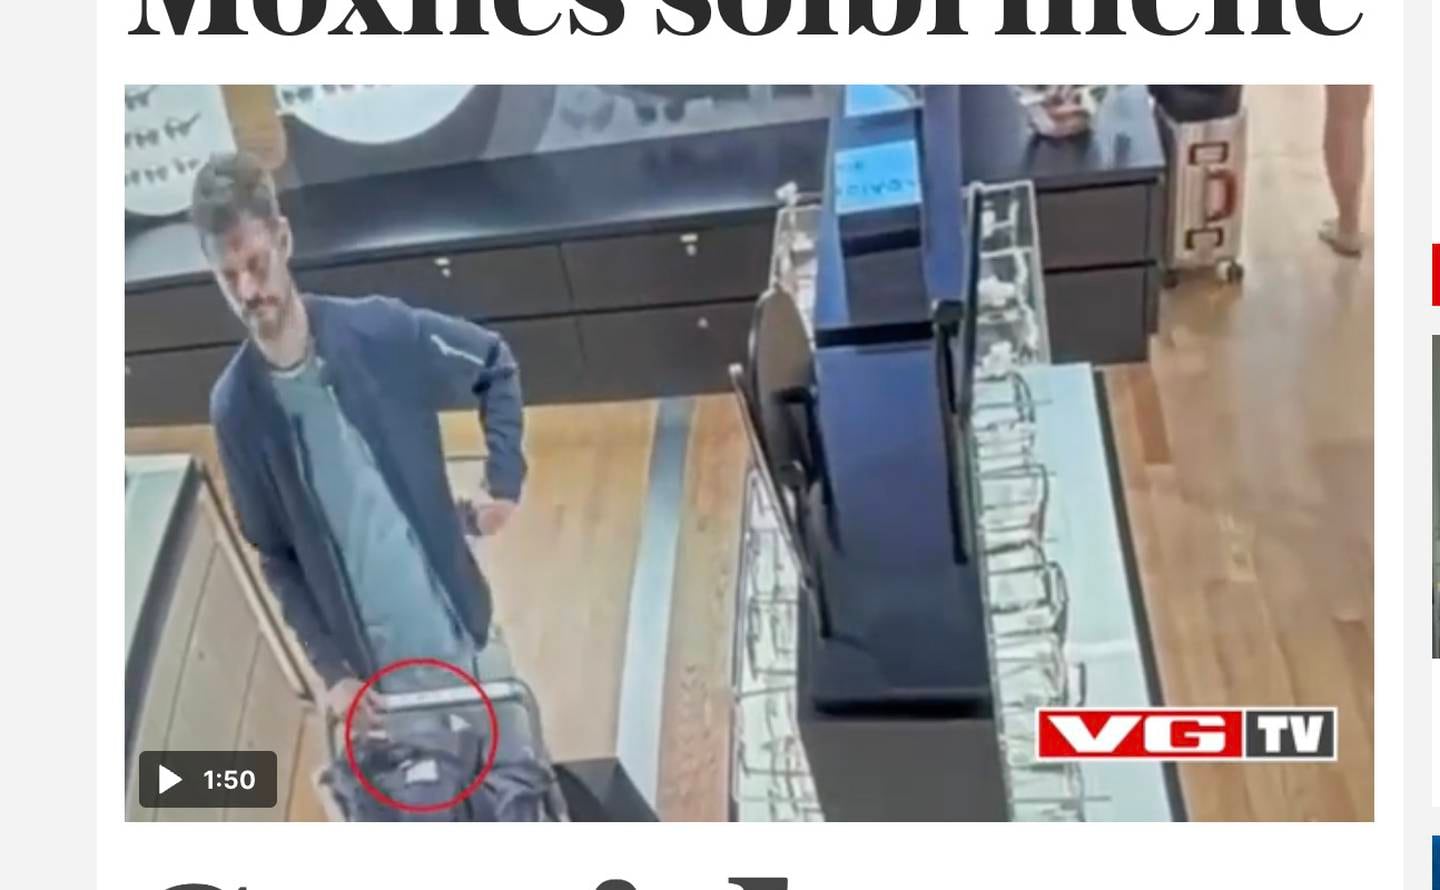 VGTV publiserte måndag ein overvakingsvideo der Raudt-leiar Bjørnar Moxnes er påstått å stele solbriller på Gardermoen. Moxnes vart sjukmeldt måndag. Foto: Jon Eeg / NTB / NPK